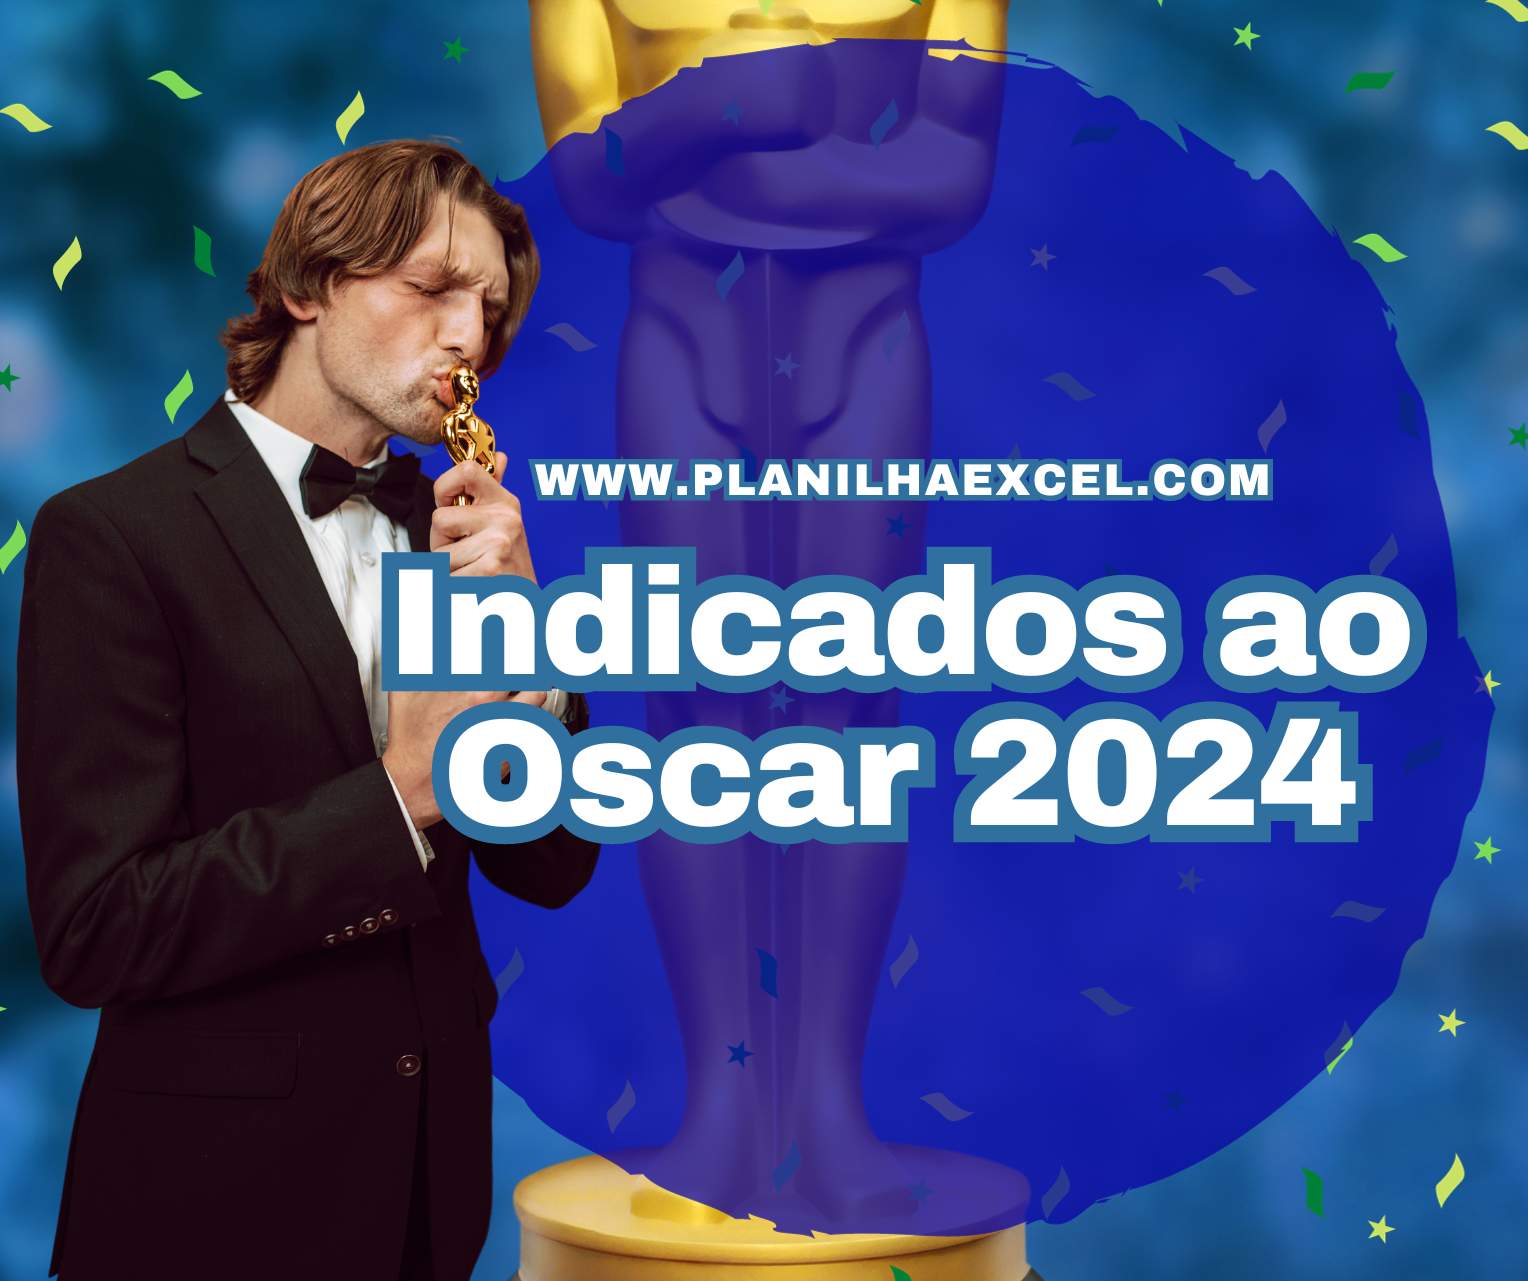 Indicados ao Oscar 2024 Planilha Excel